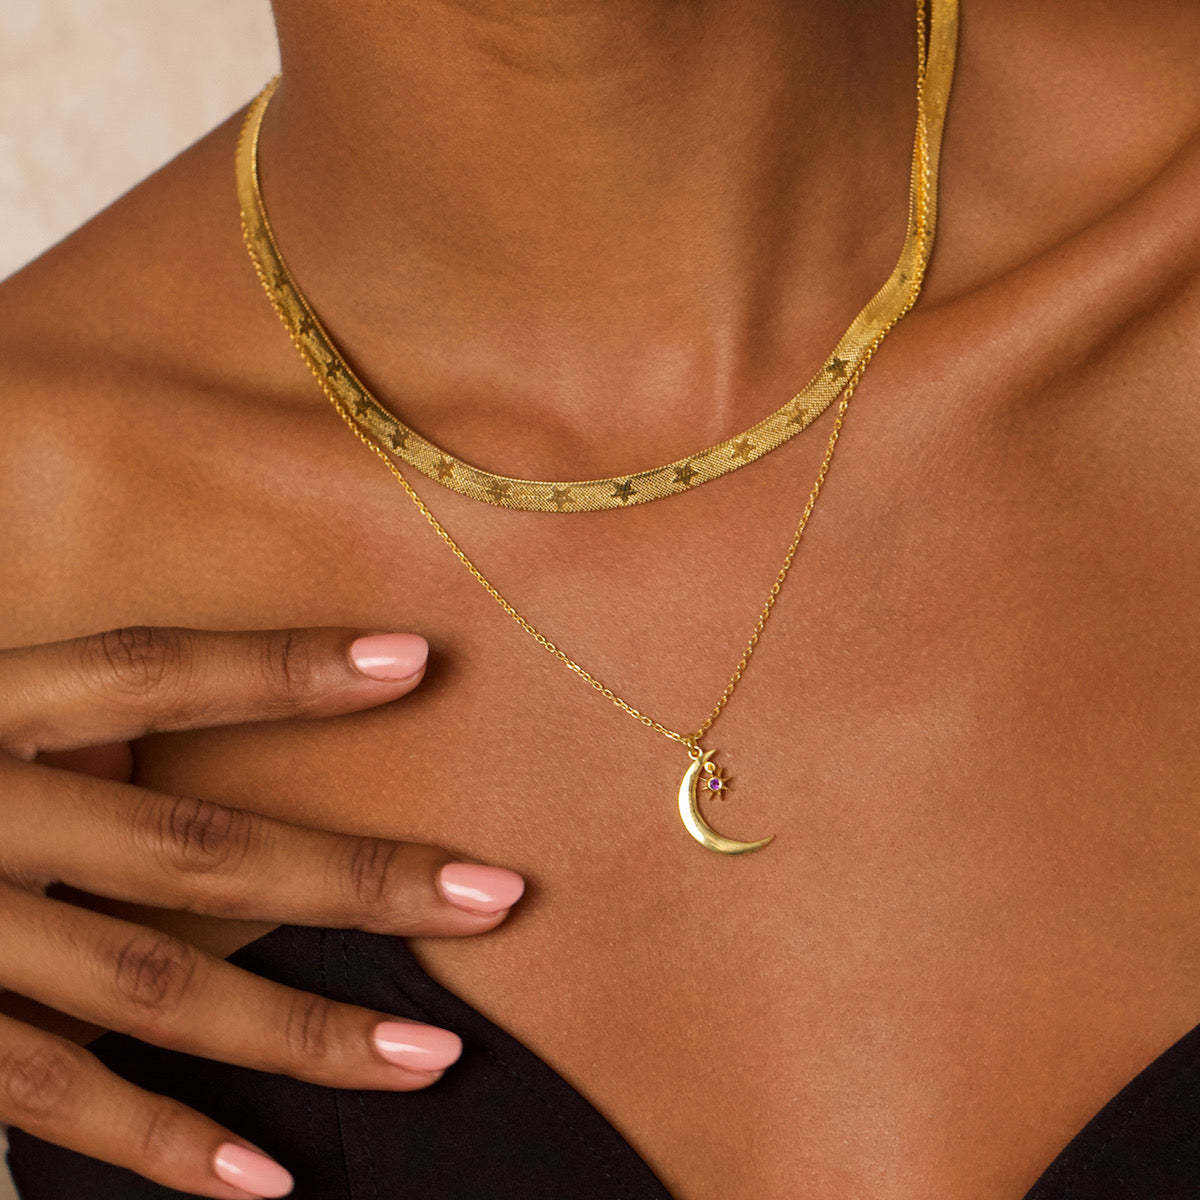 Gorgeous gold vermeil necklace